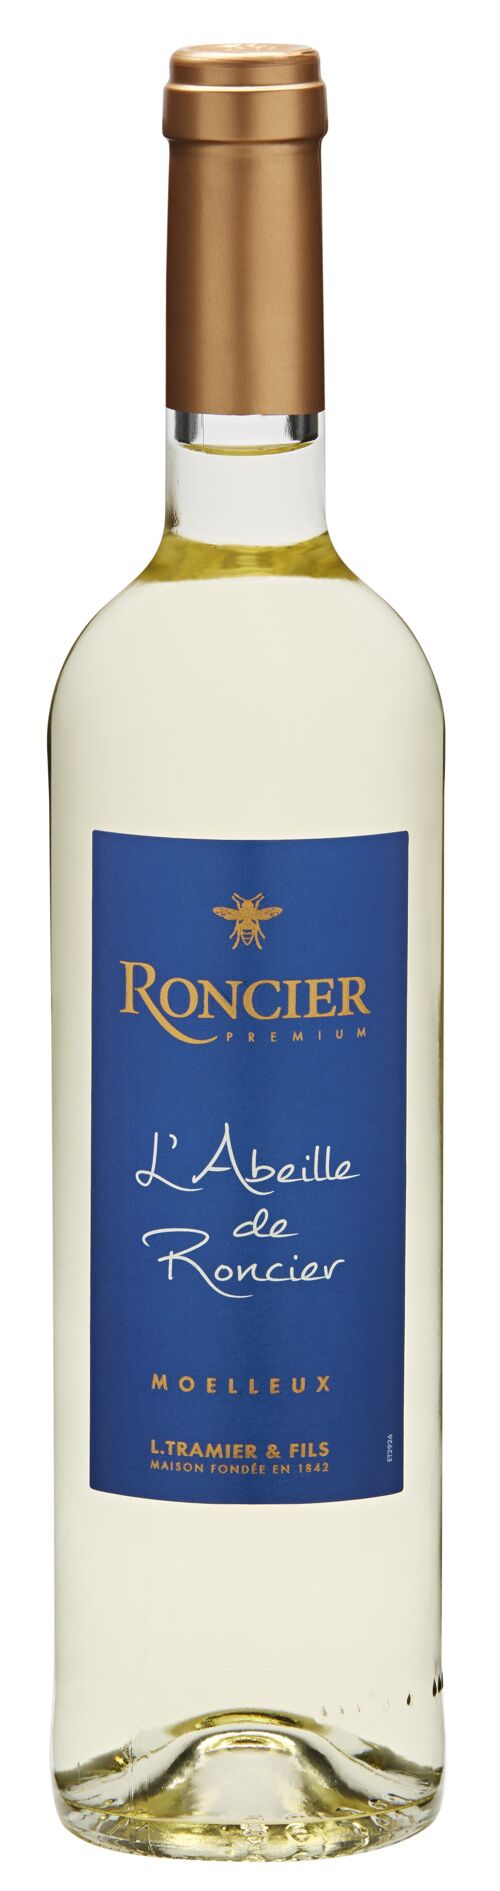 Roncier Premium Moelleux "L' abeille de Roncier" - Vin Blanc notes de miel 75cl (VDF Bourgogne) - idéal avec foie gras ou desserts au chocolat